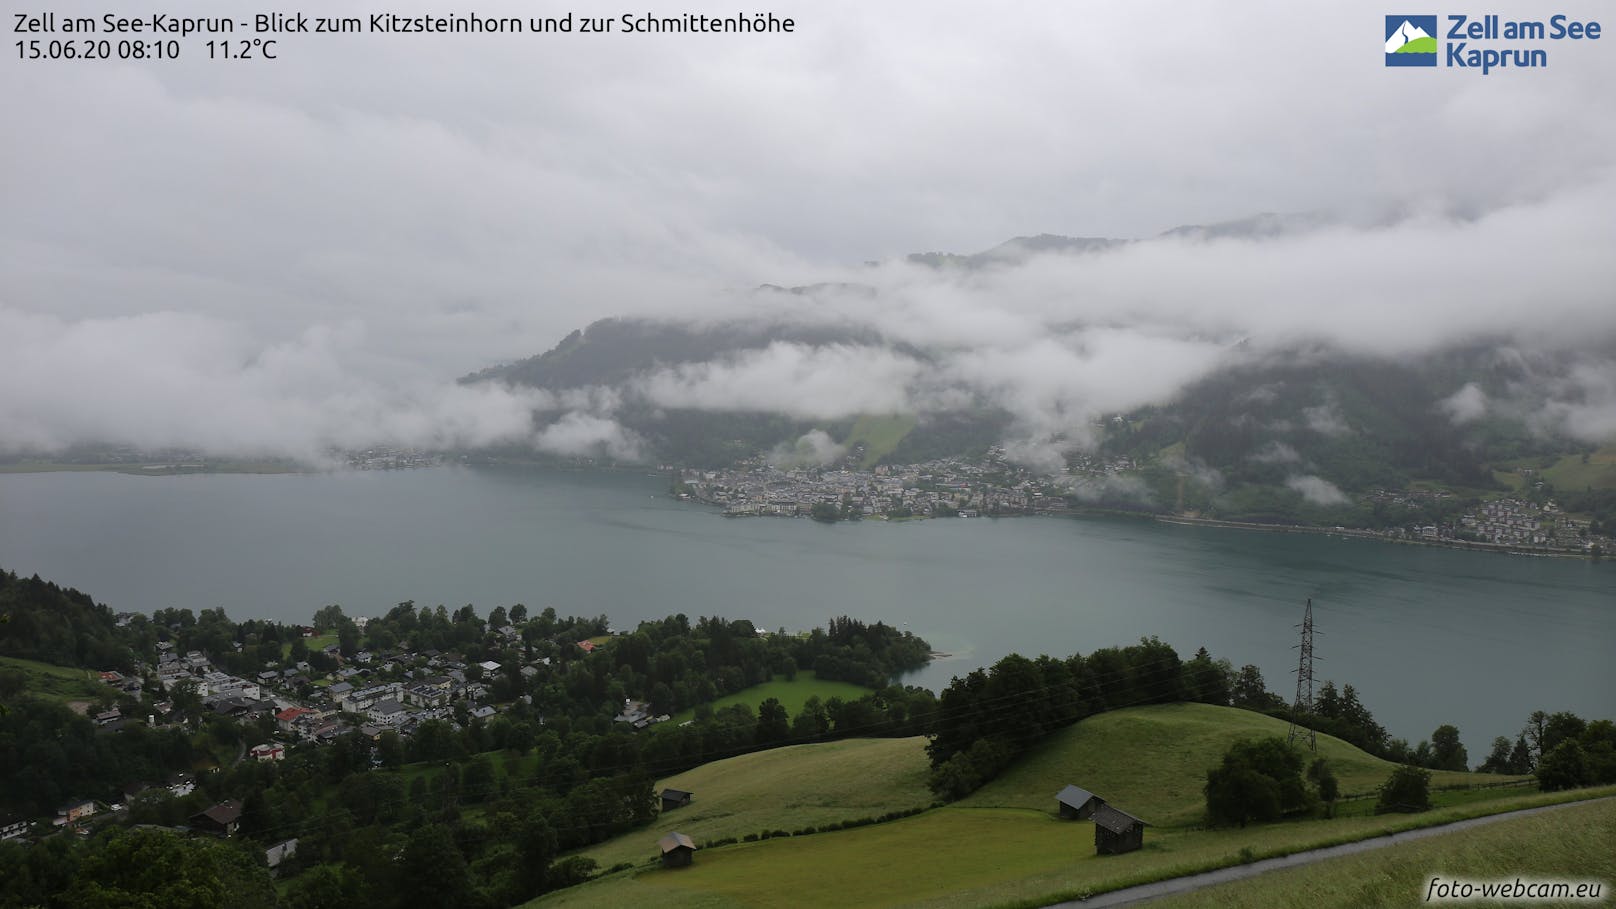 Regenwetter auch in Zell am See-Kaprun: Blick auf Kitzsteinhorn und Schmittenhöhe